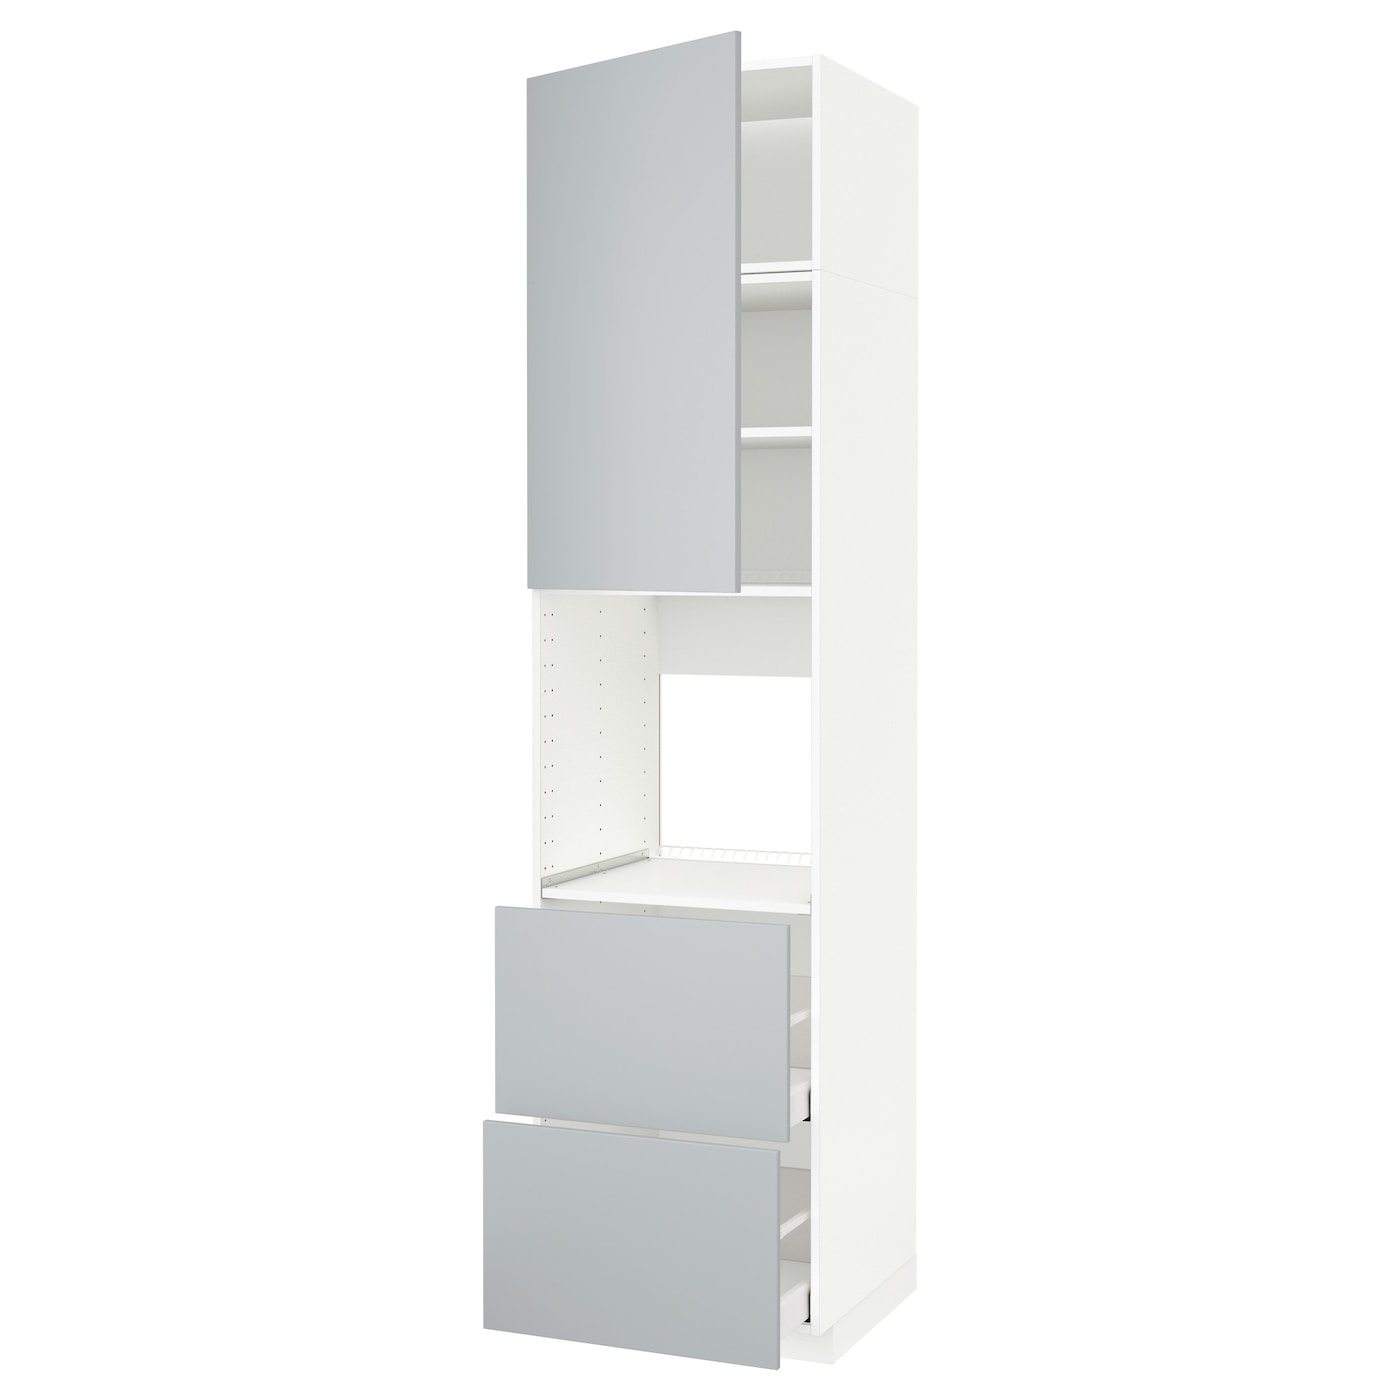 ИКЕА METOD / MAXIMERA Sza висота / двері / 2 ящики - білий / Veddinge сірий 60x60x240 см, 094.554.87